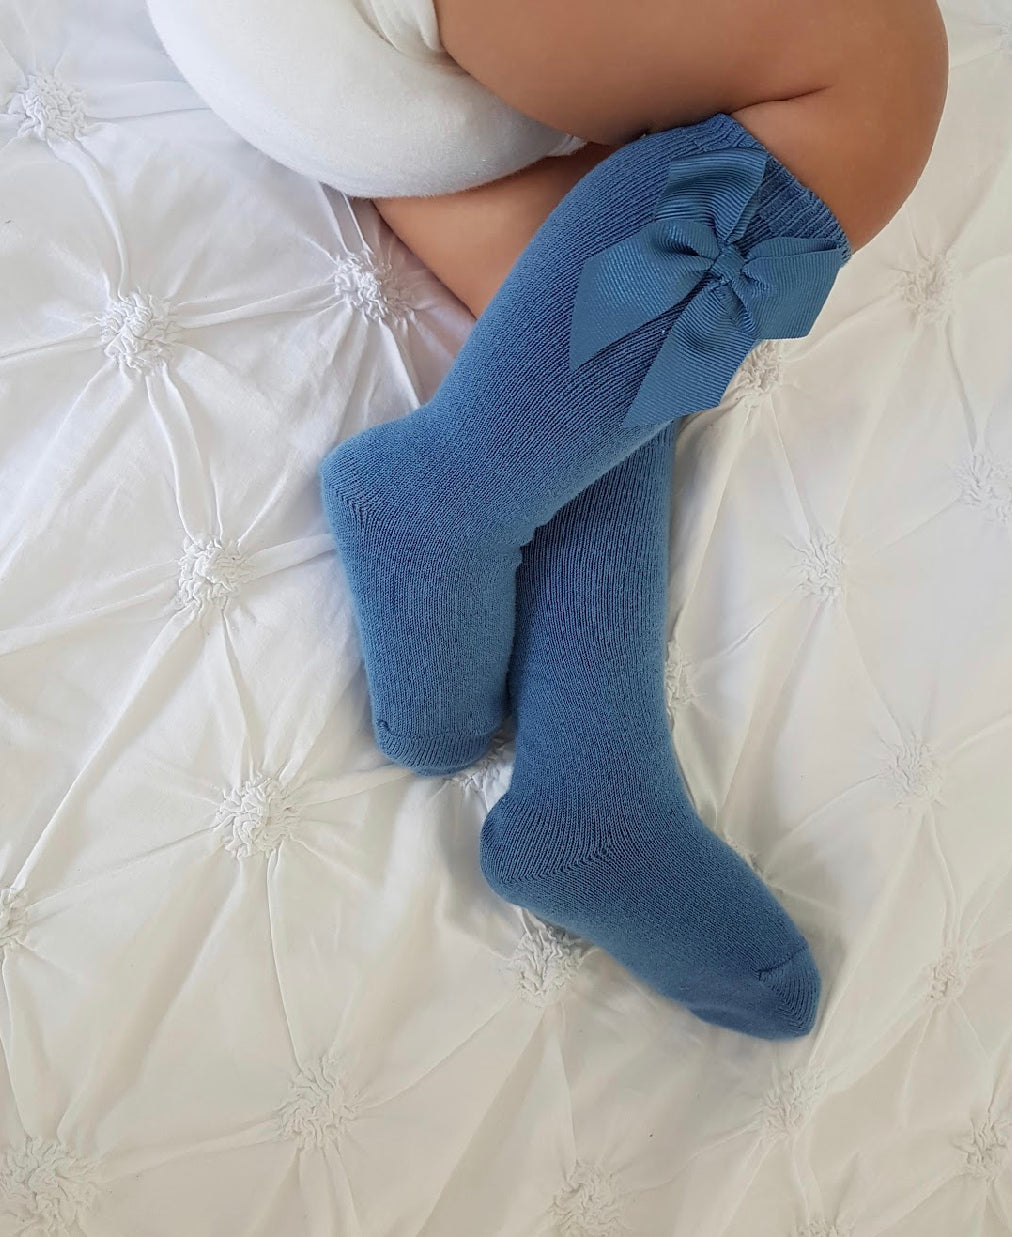 French Blue Grosgrain bow socks